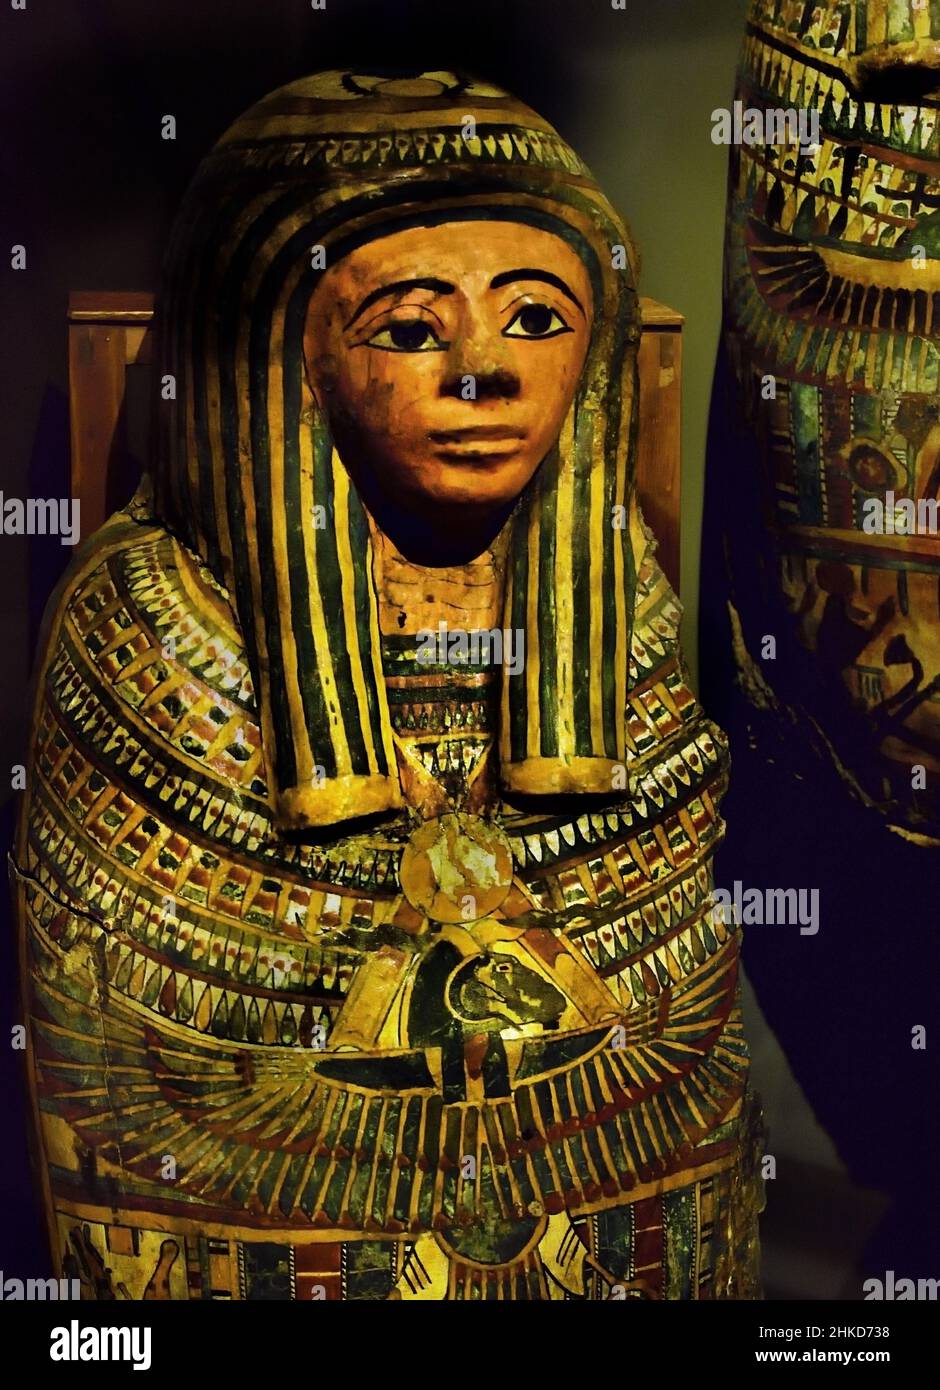 Masque funéraire égyptien de Cartonnage de la troisième période intermédiaire, dynastie 22nd (944-1025BC). Égypte (Museo Egizio di Torino Italie) Banque D'Images